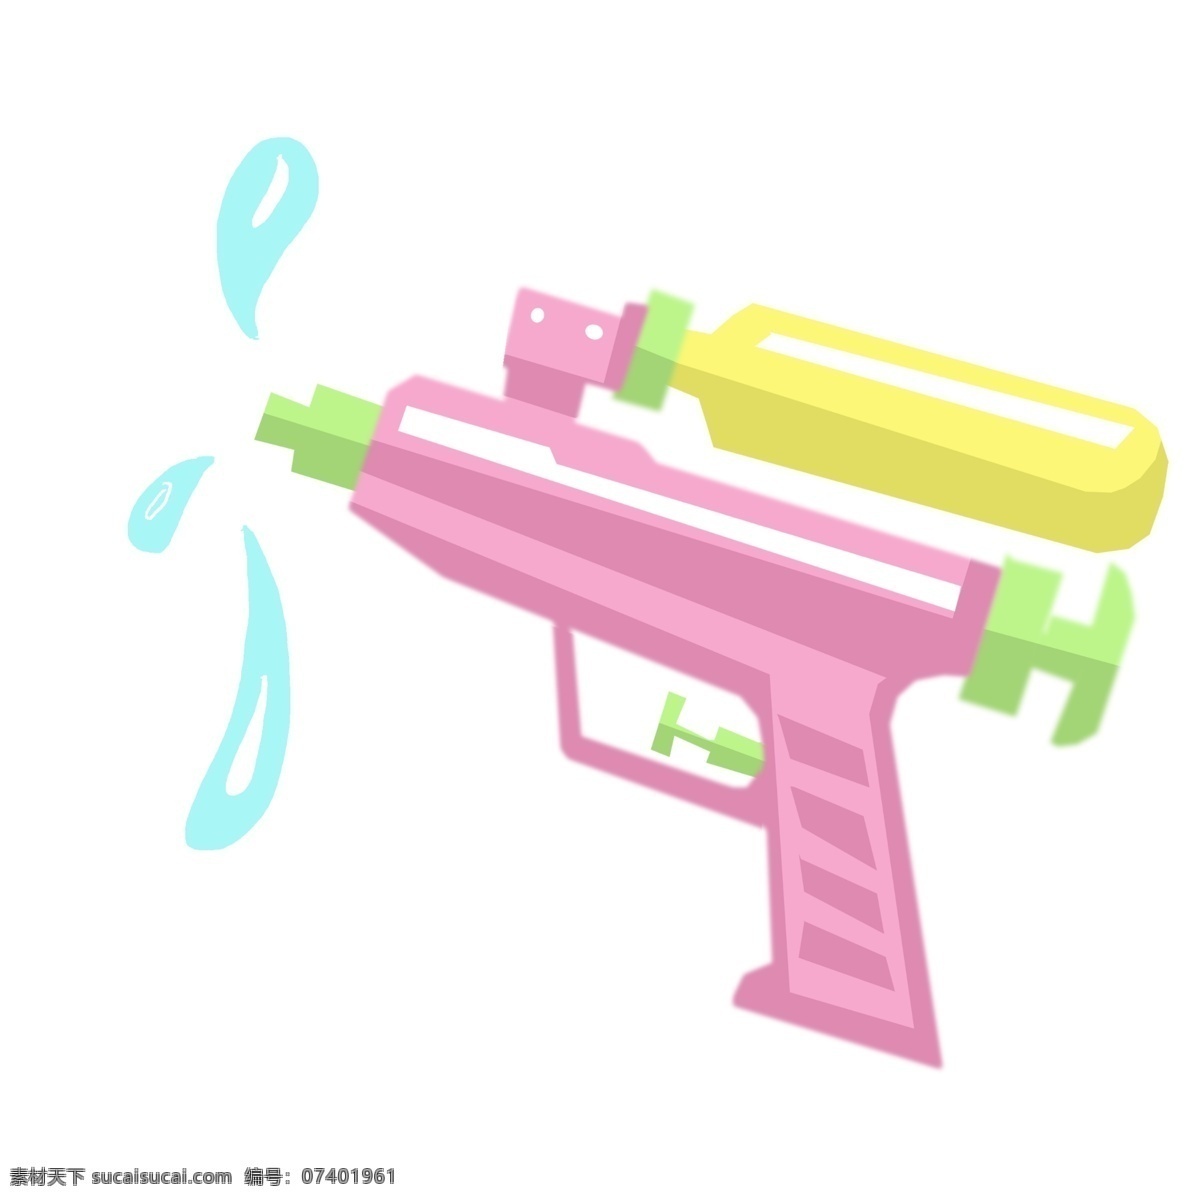 紫色 水枪 卡通 插画 紫色的水枪 卡通插画 水枪插画 玩具水枪 玩具插画 水枪模型 美丽的水枪